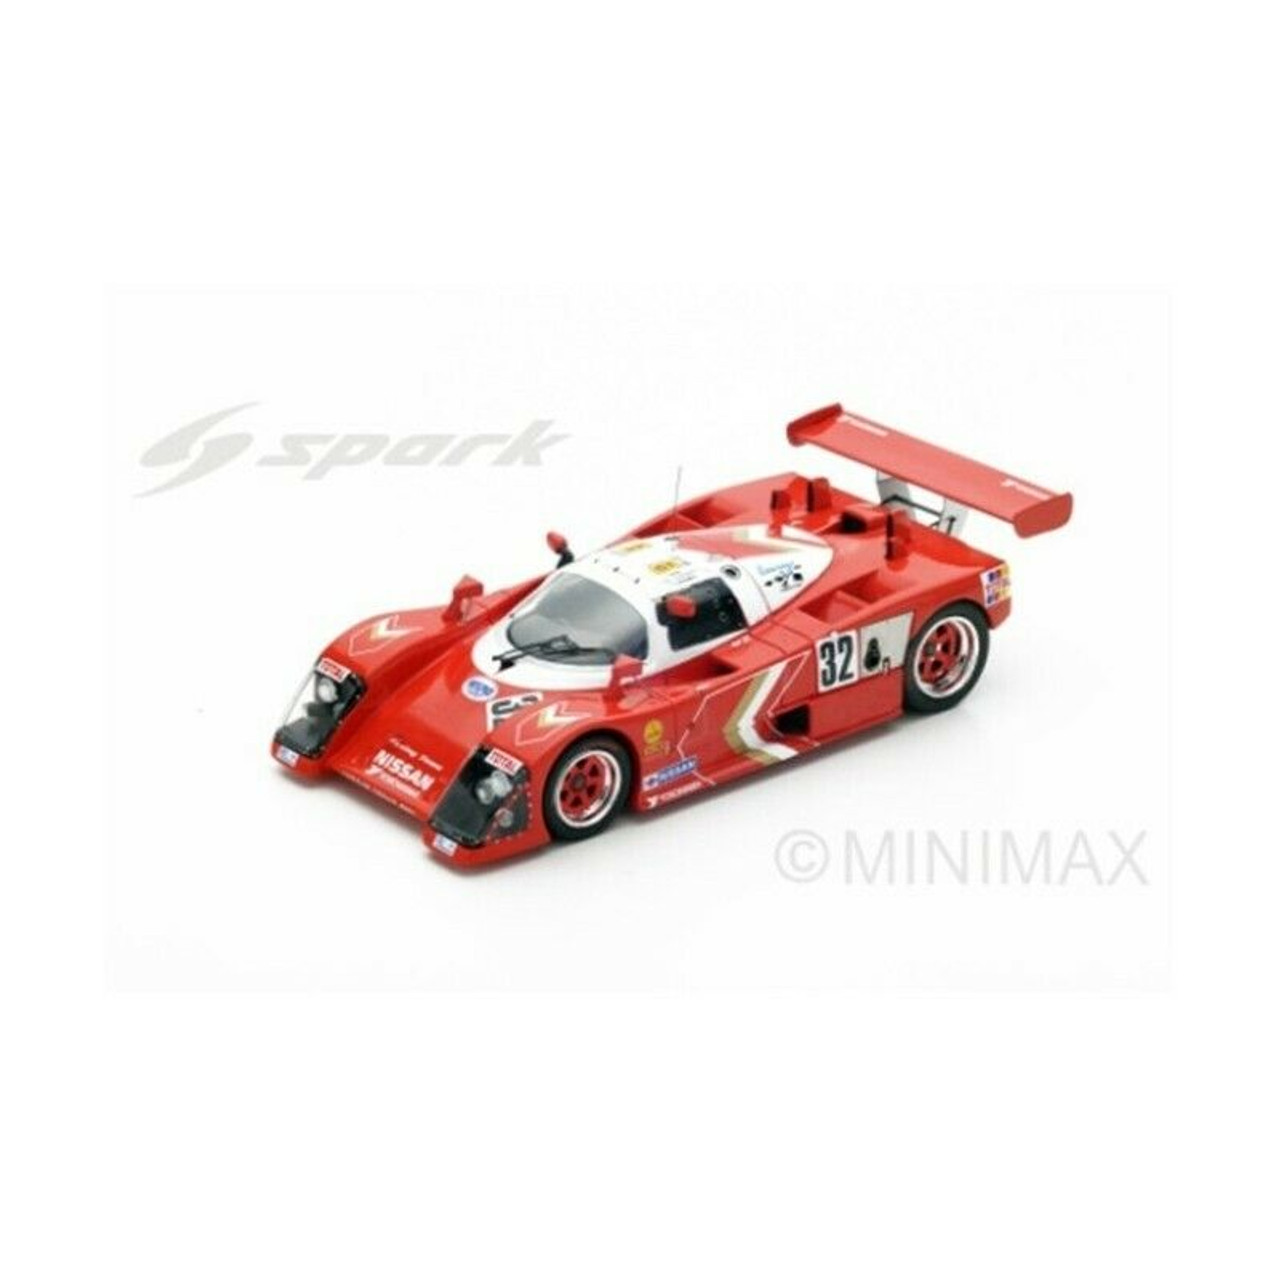 1/43 Nissan R88 S n.32 Le Mans 1989 A. Olofsson - T. Wada - A. Morimoto model car by Spark